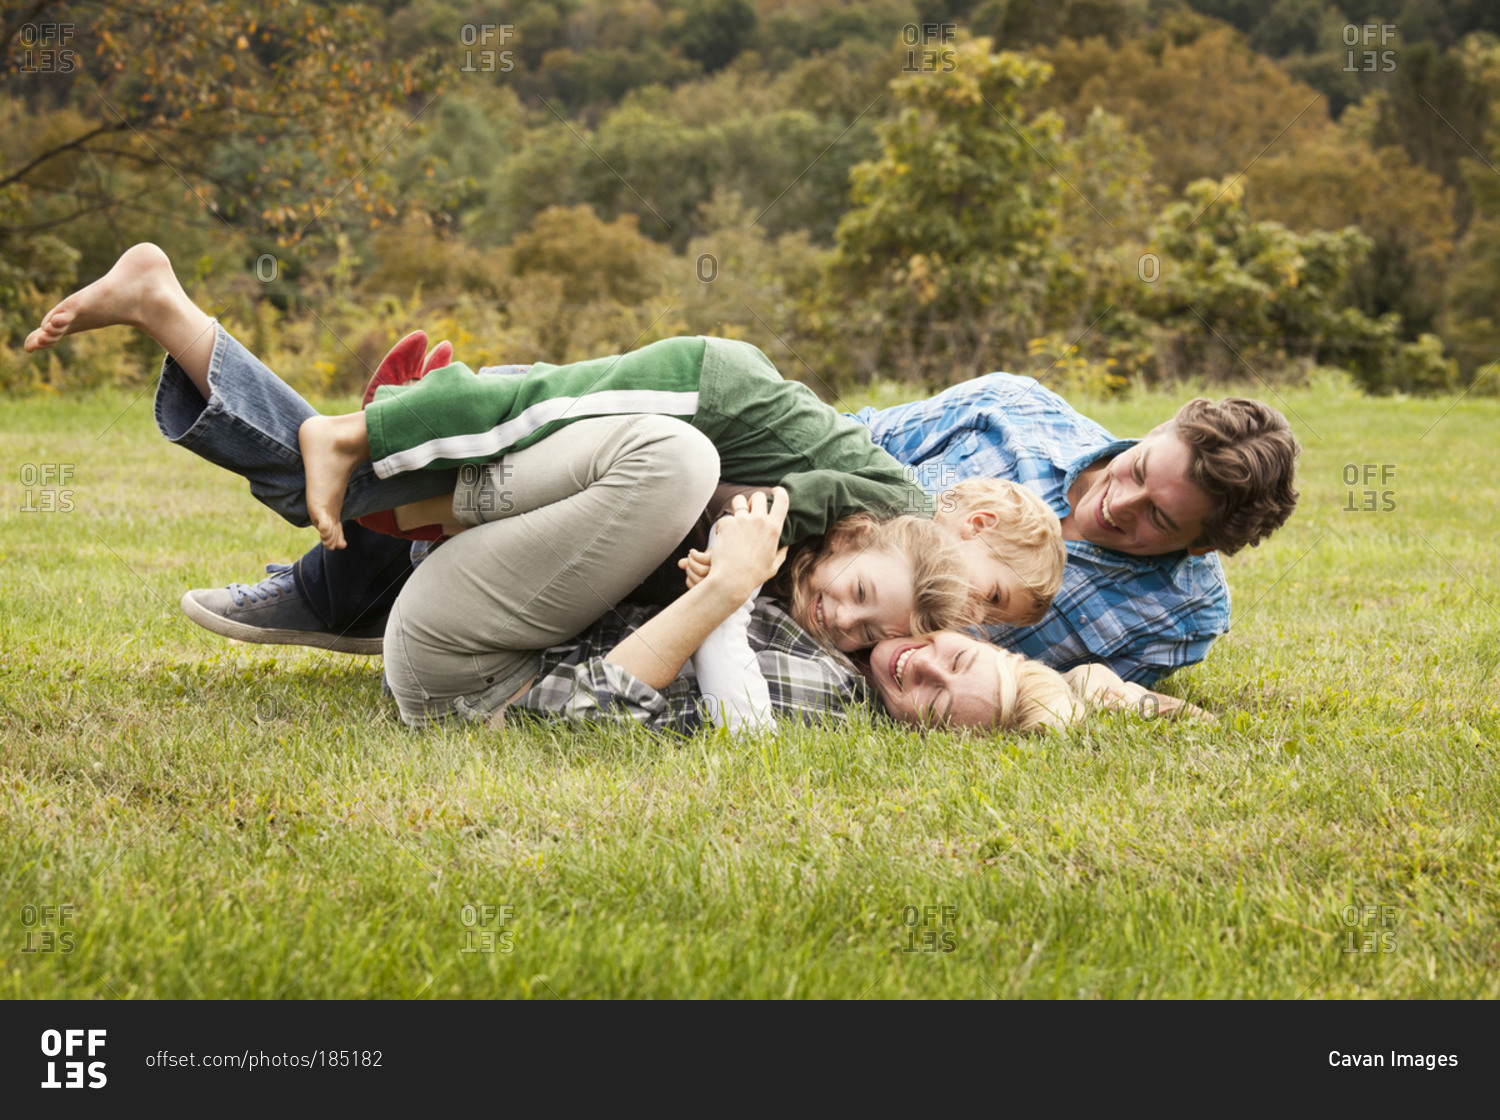 Children wrestling their parents in the grass